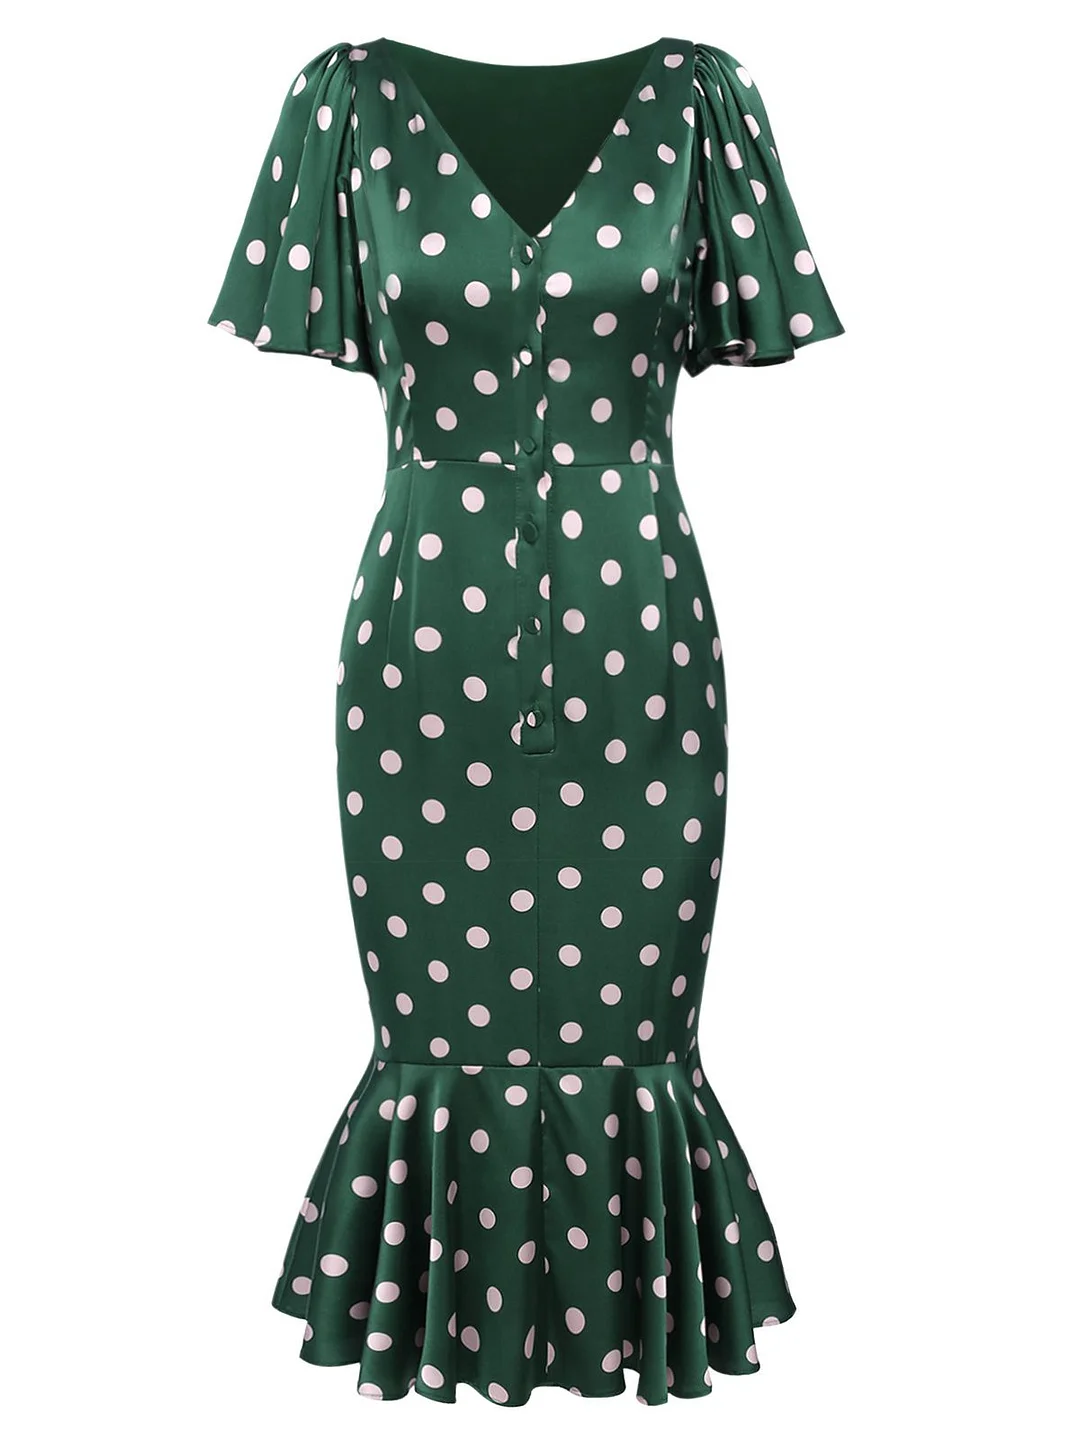 Emerald 1960s Polka Dot Fishtail Dress